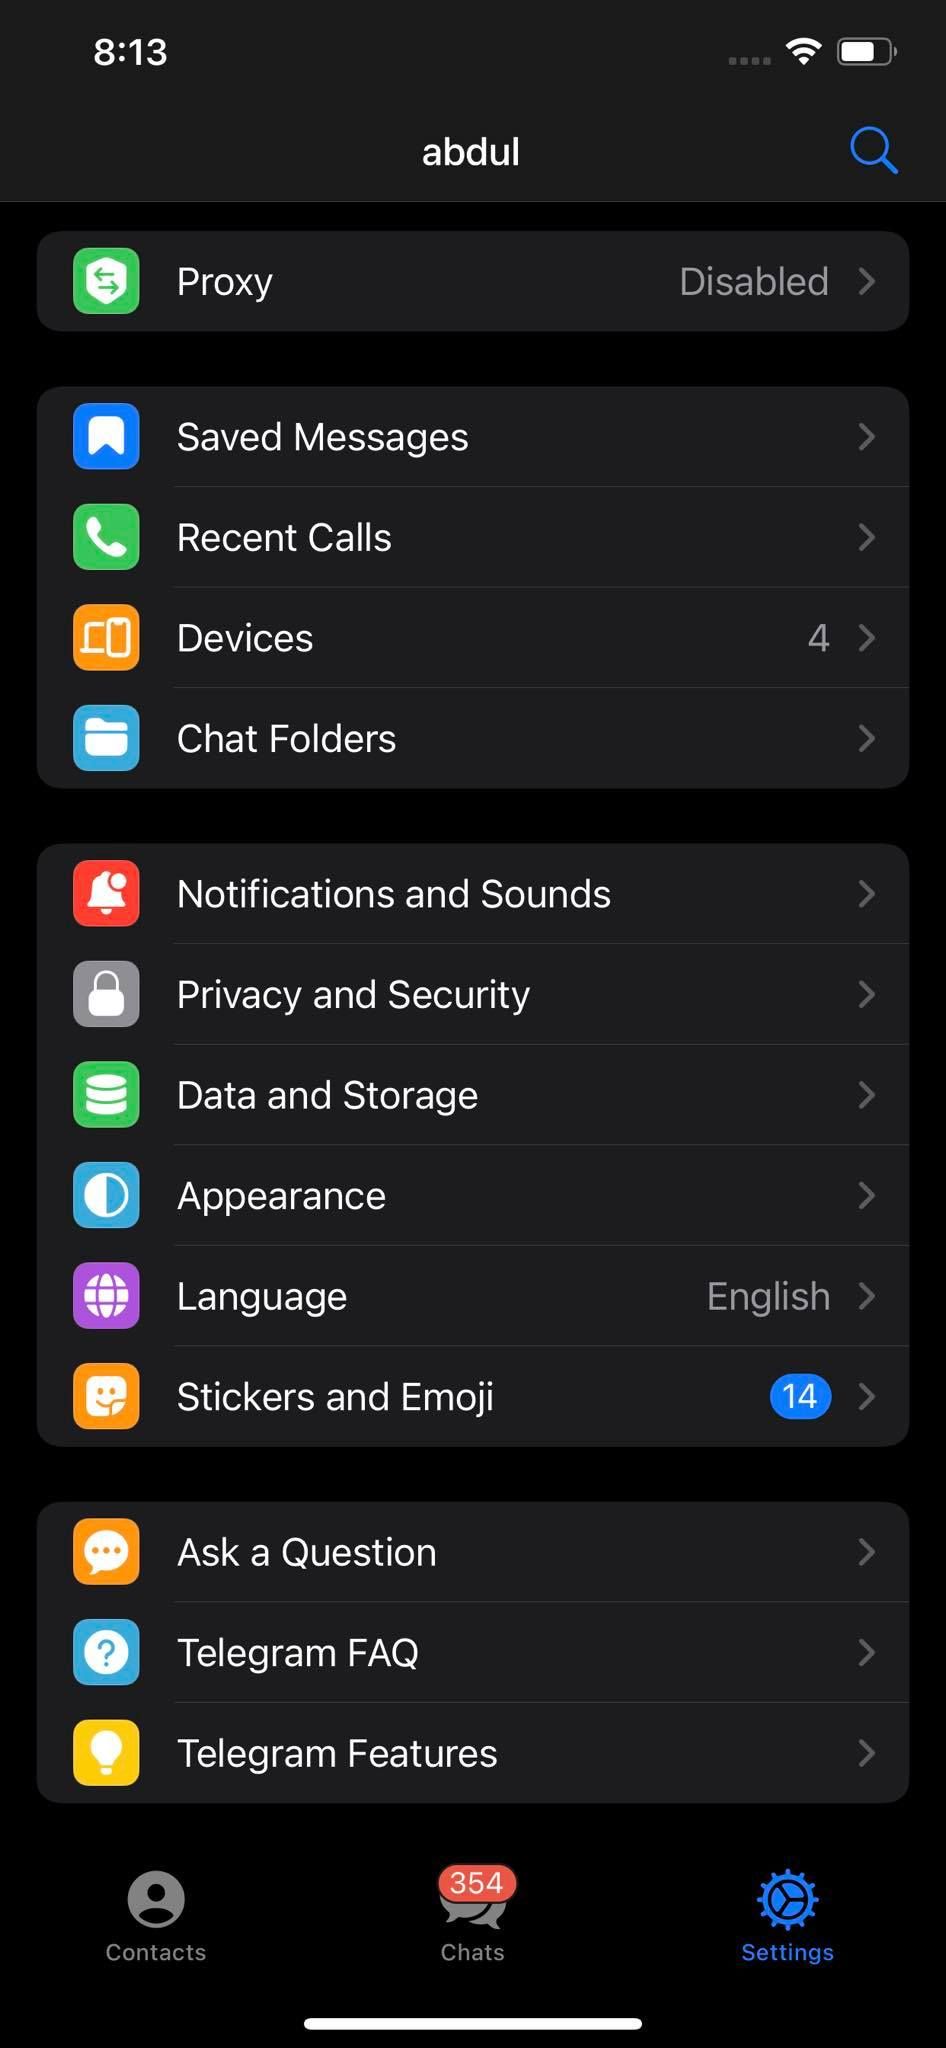 Settings Menu of Telegram App for iOS